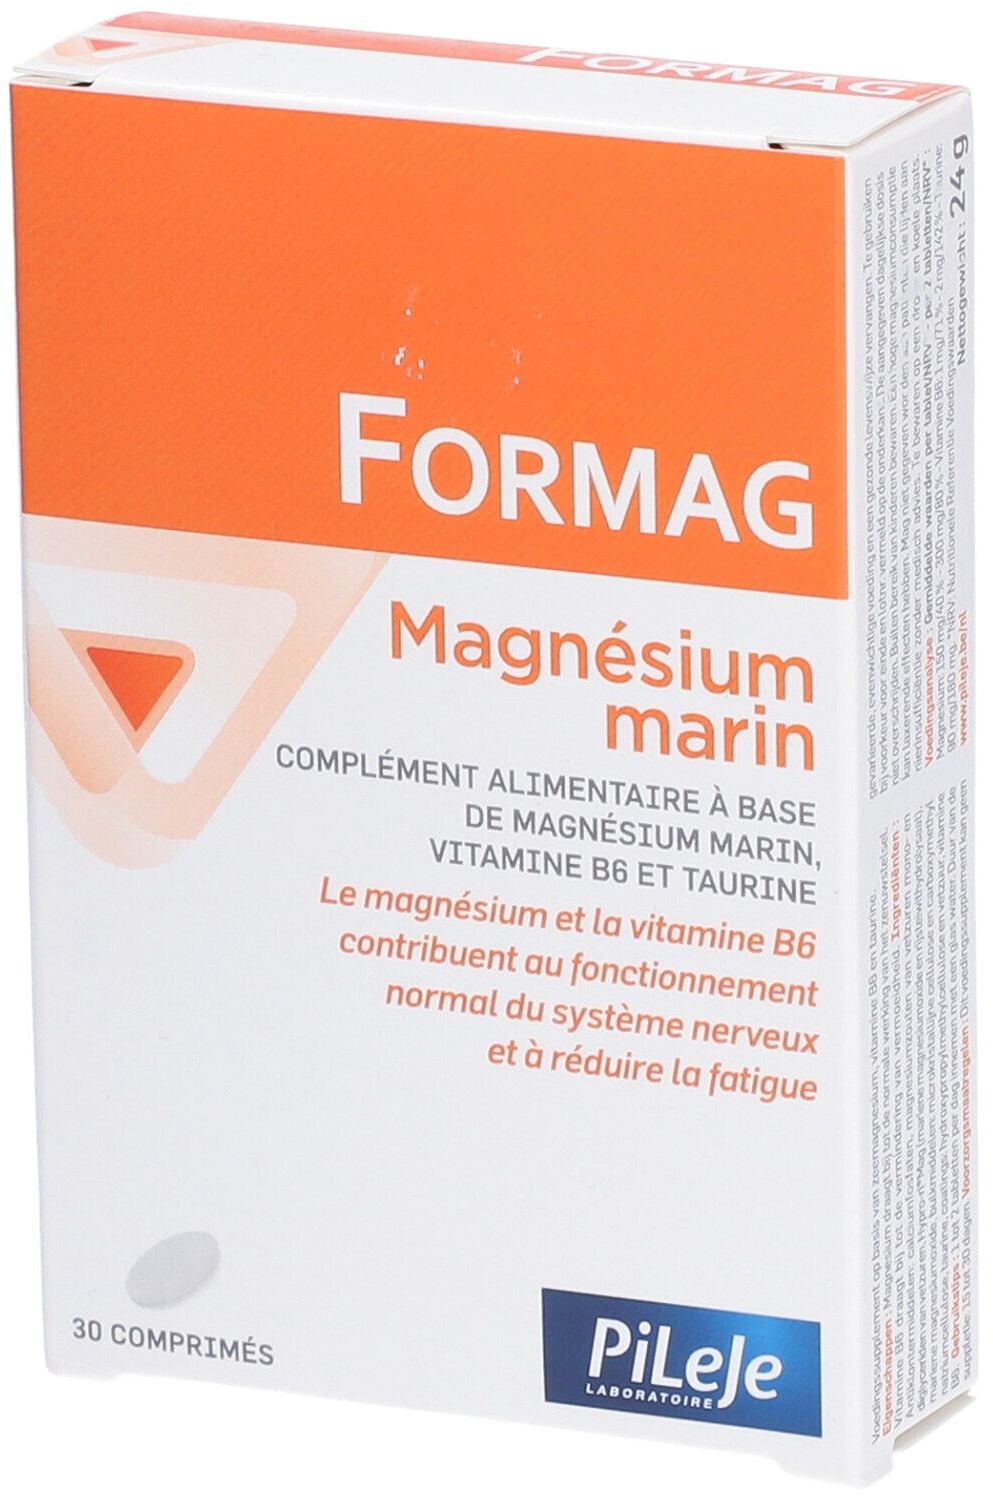 Formag Marine Magnesium